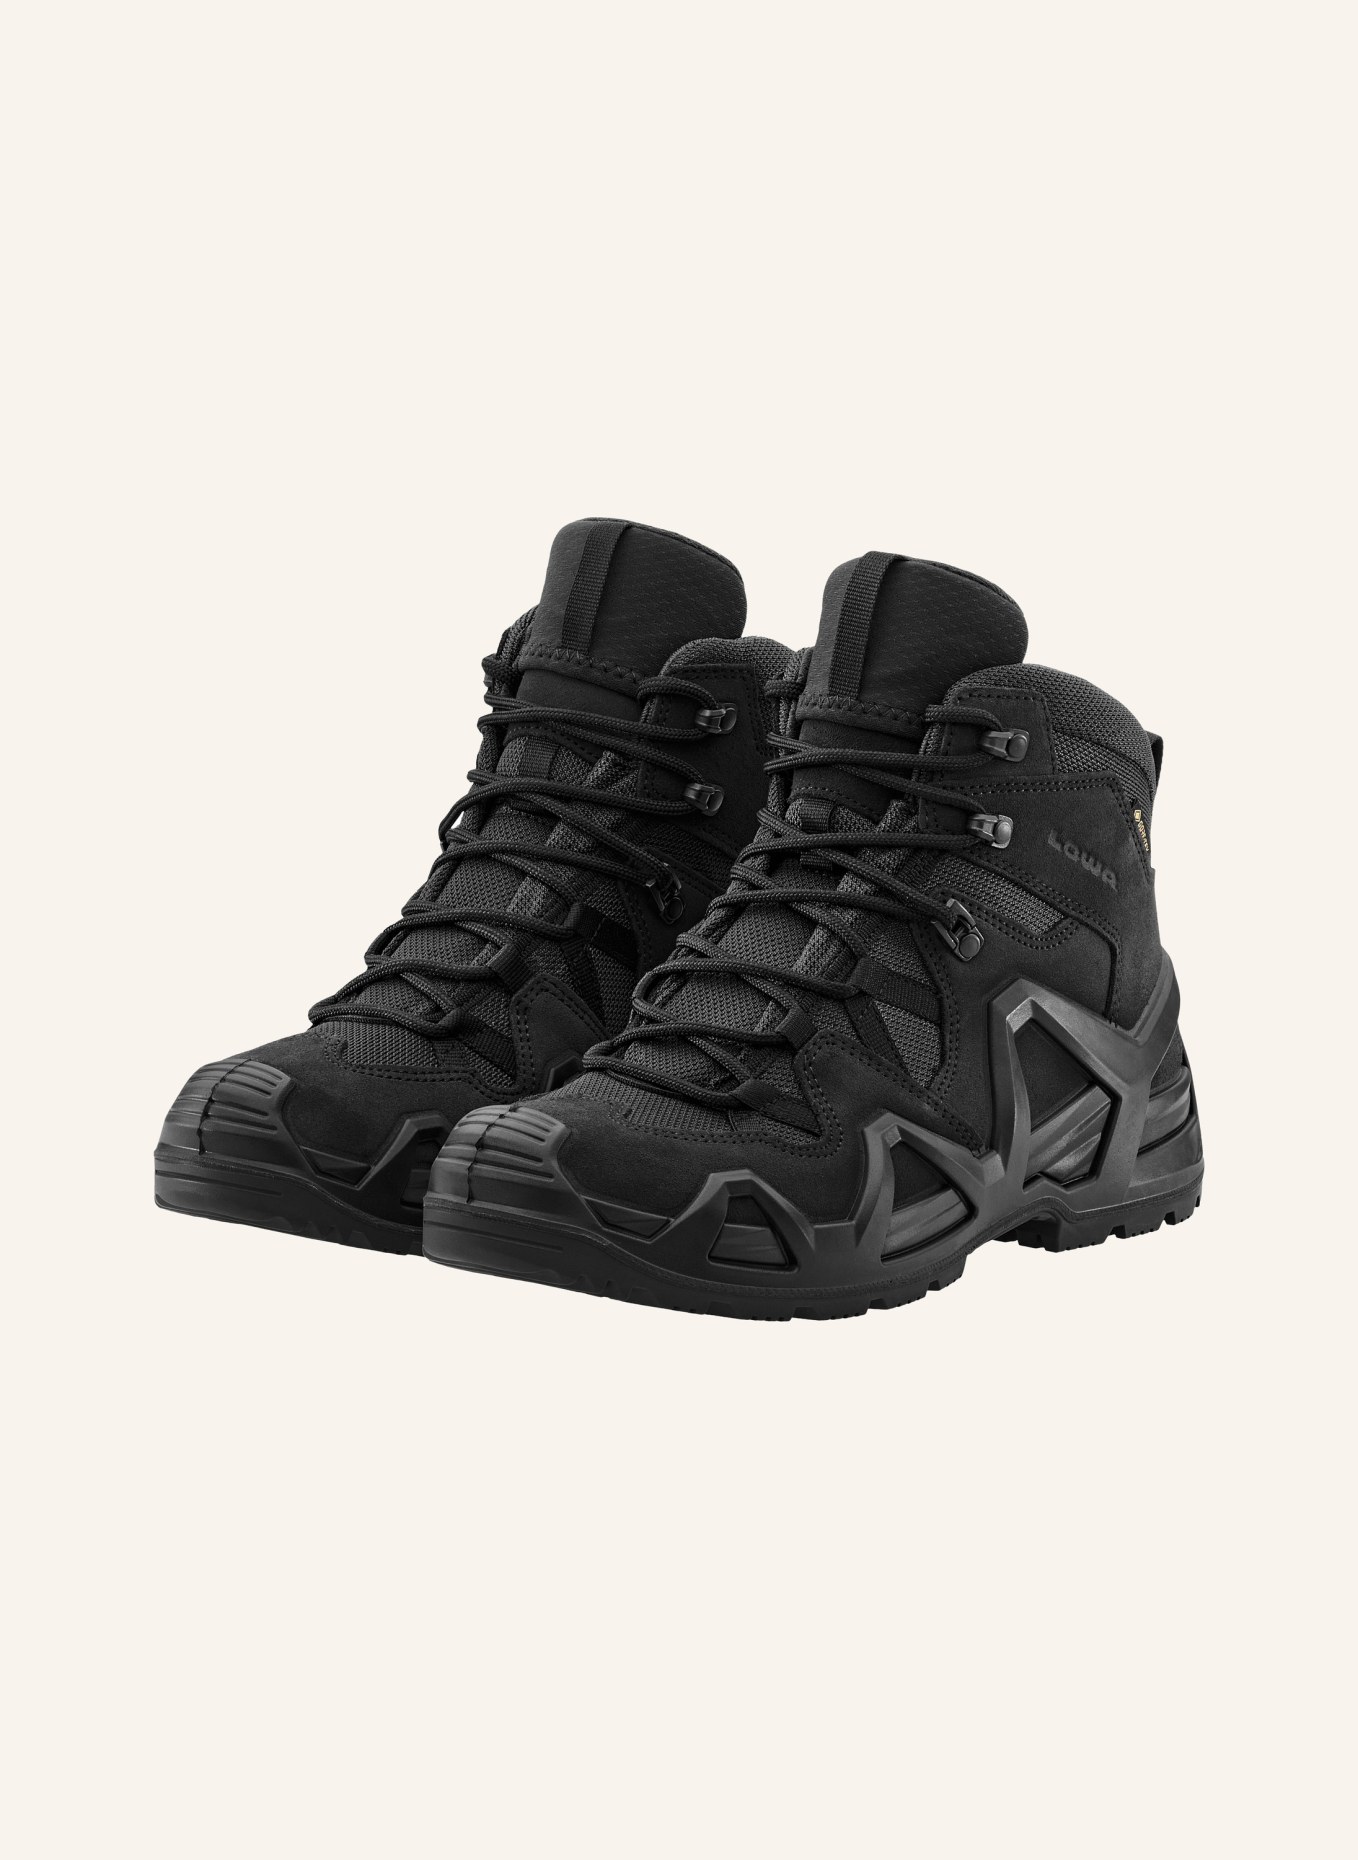 LOWA PROFESSIONAL Outdoor-Schuhe ZEPHYR MK2 GTX MID, Farbe: SCHWARZ (Bild 1)